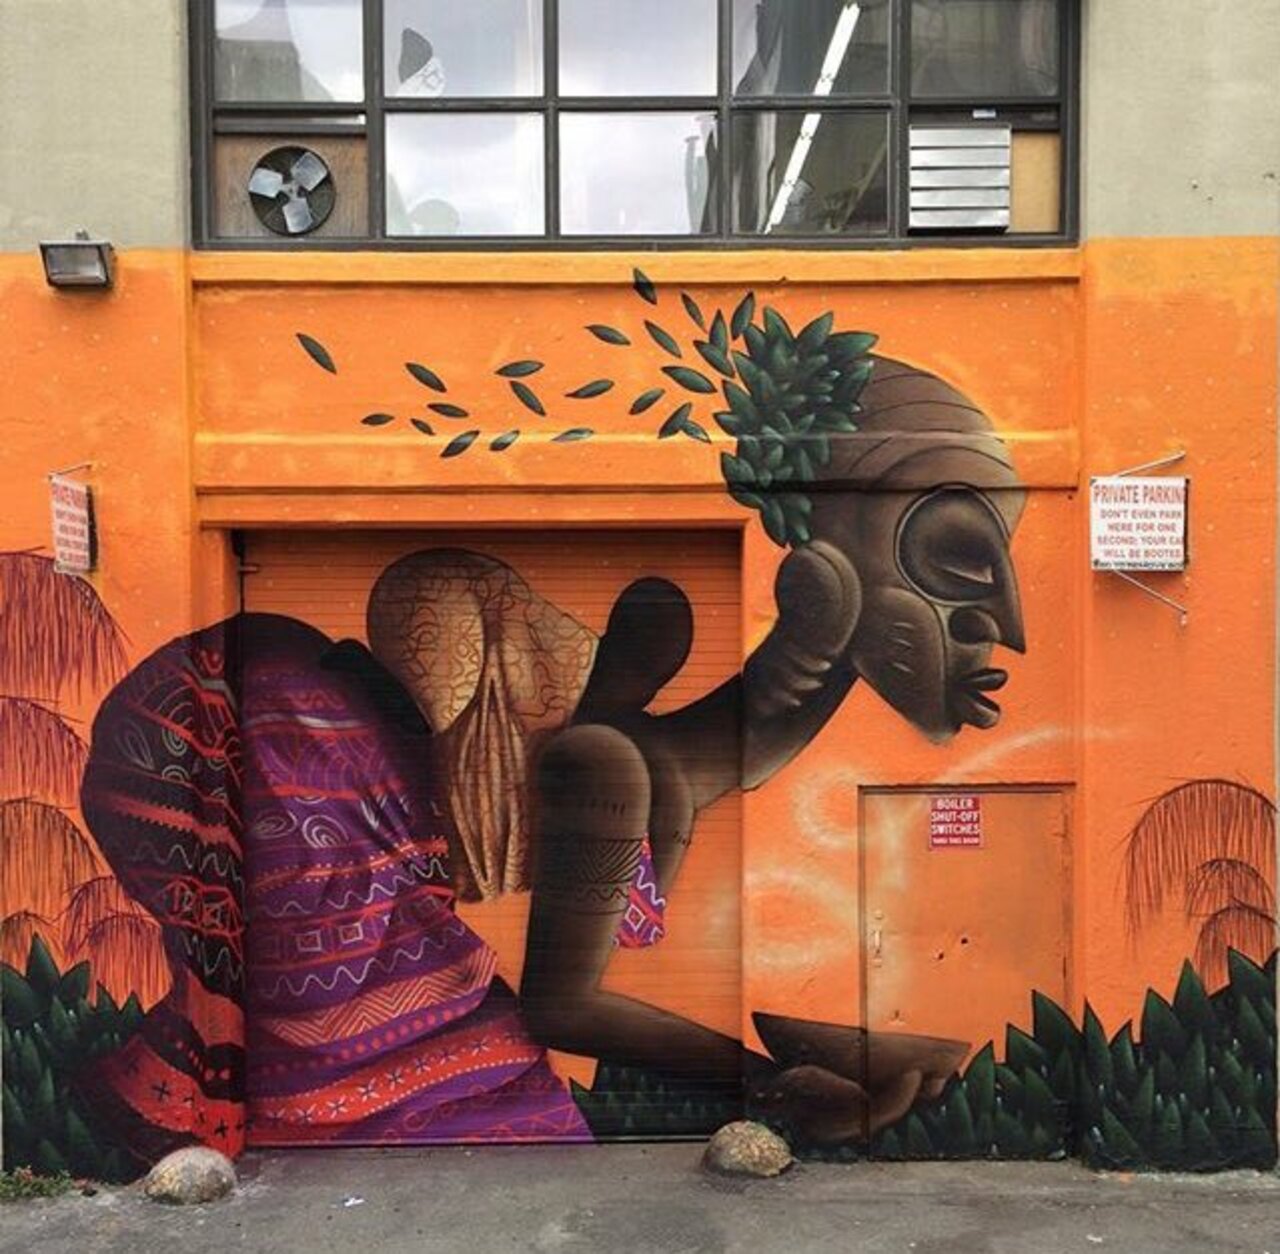 RT belilac "RT belilac "New Street Art by Alexandre Keto in NYC 

#art #graffiti #mural #streetart https://t.co/5GlAopJczl""